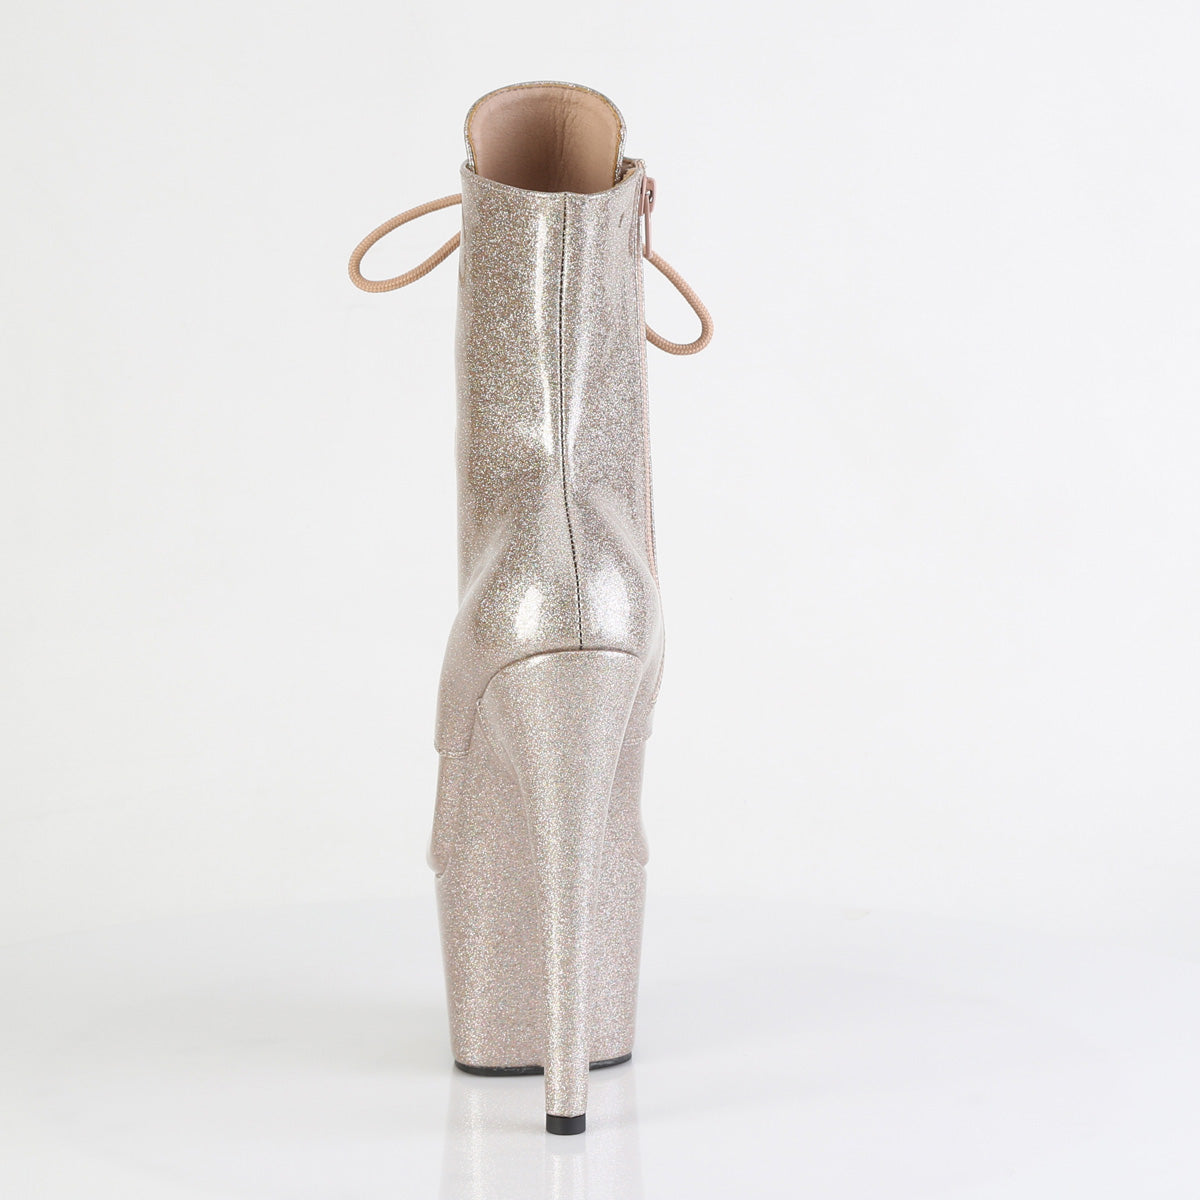 Champagne Glitter Pole Boots Adore-1020GP